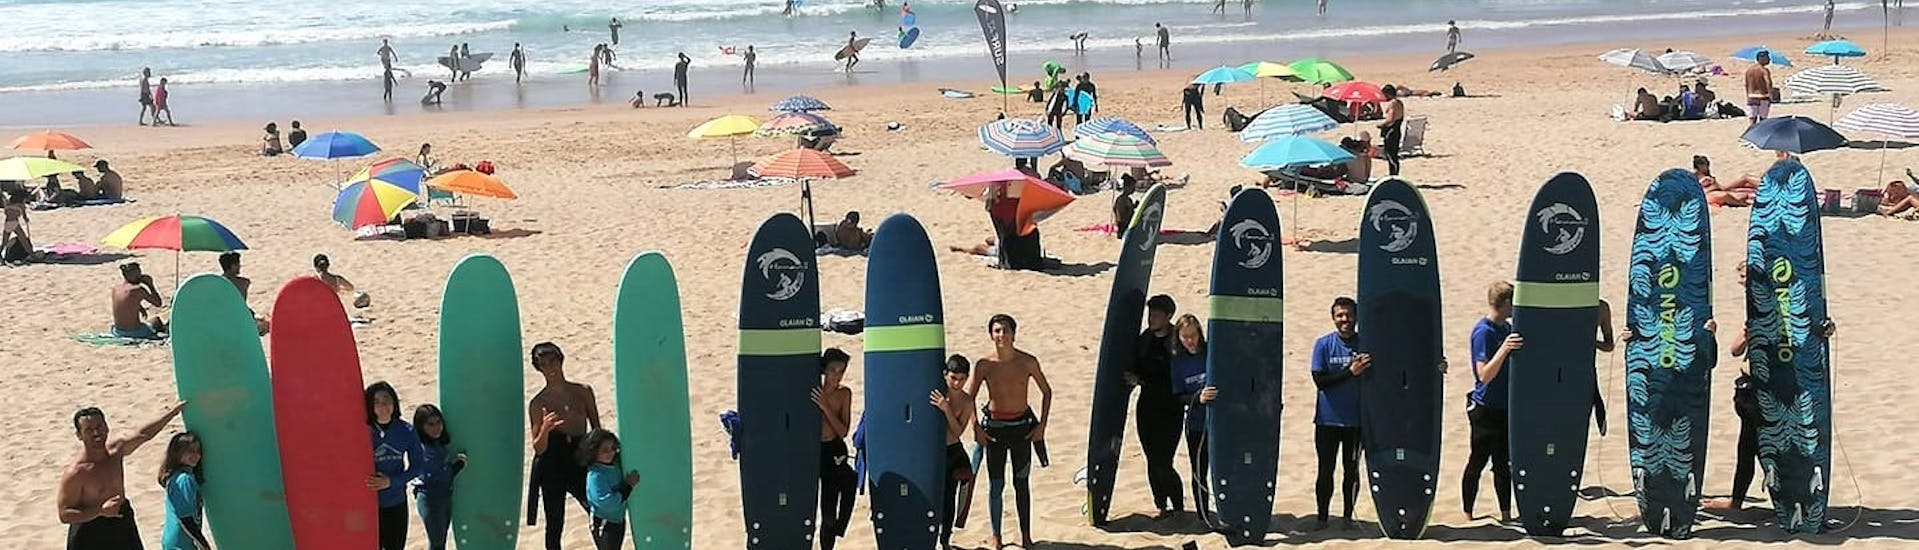 Lezioni di surf a Sintra da 8 anni per tutti i livelli.